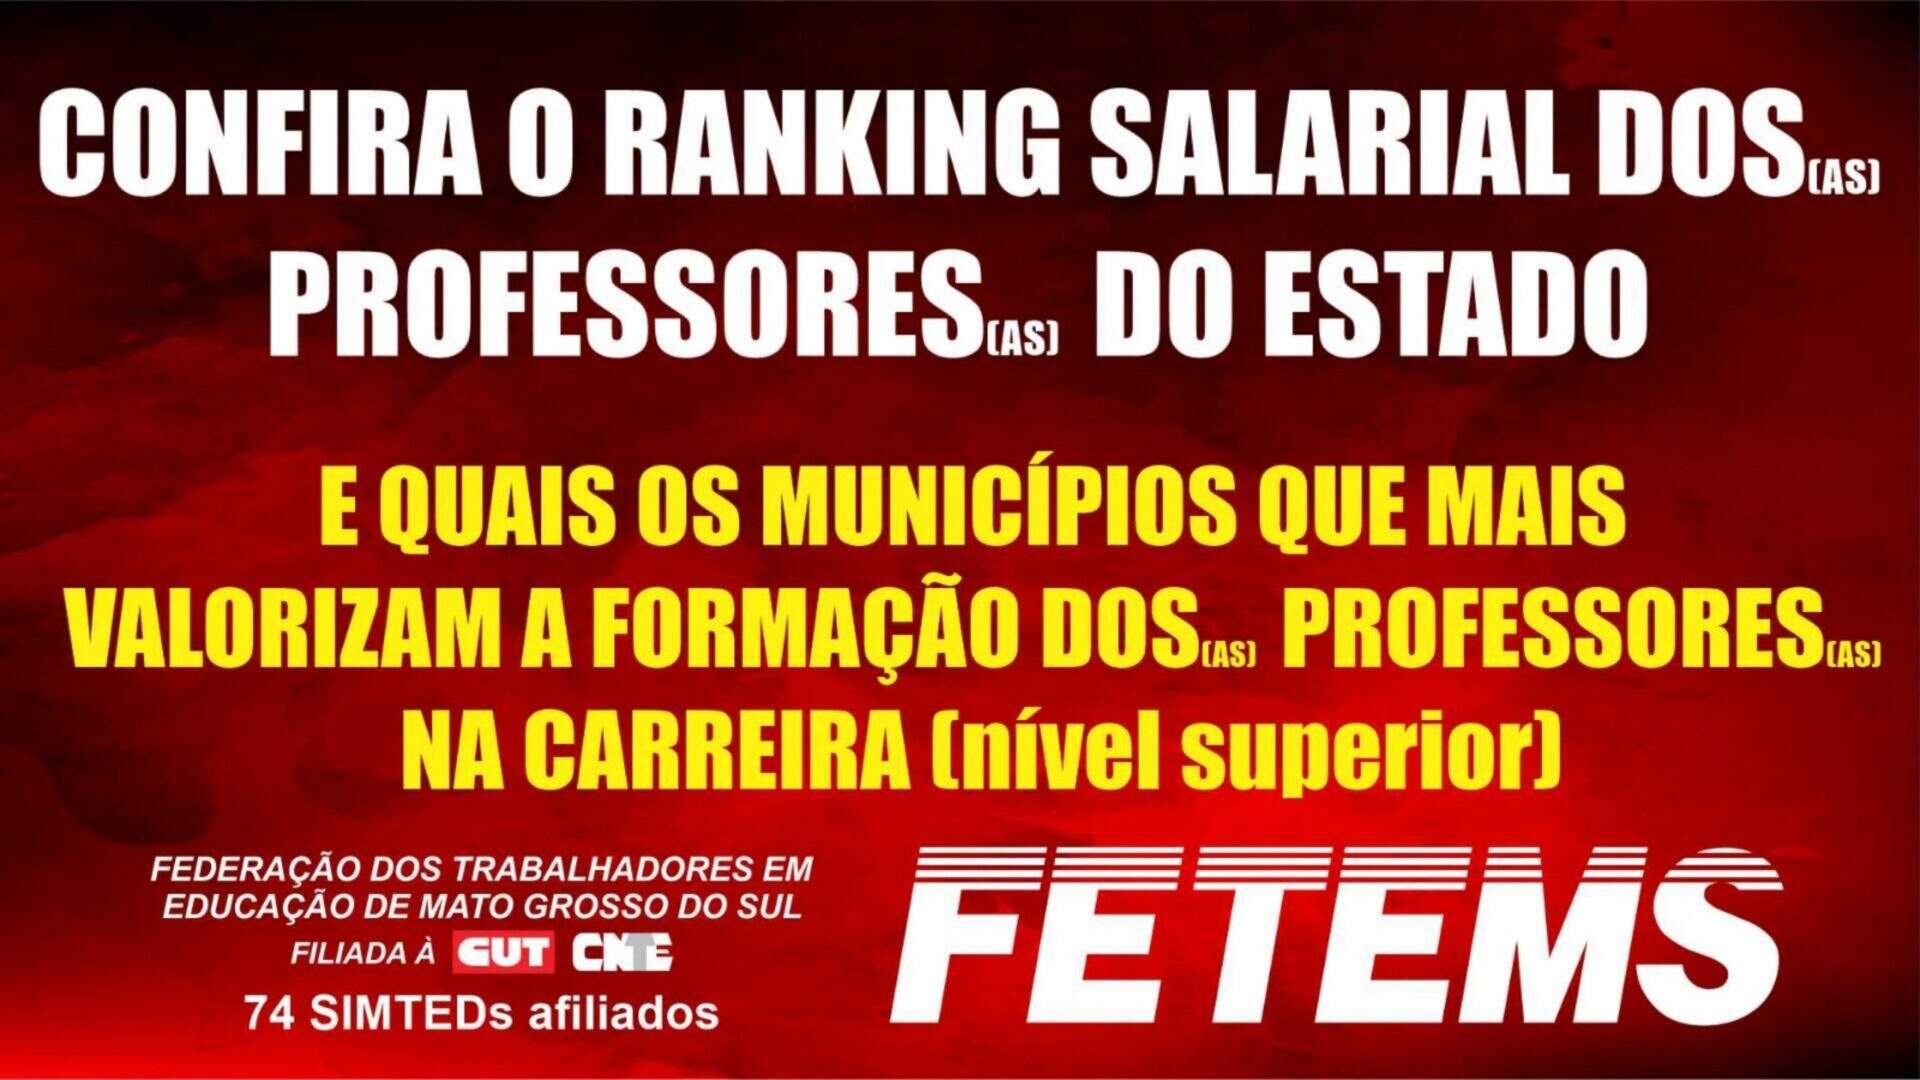 Confira o ranking salarial dos Professores do Estado de Mato Grosso do Sul